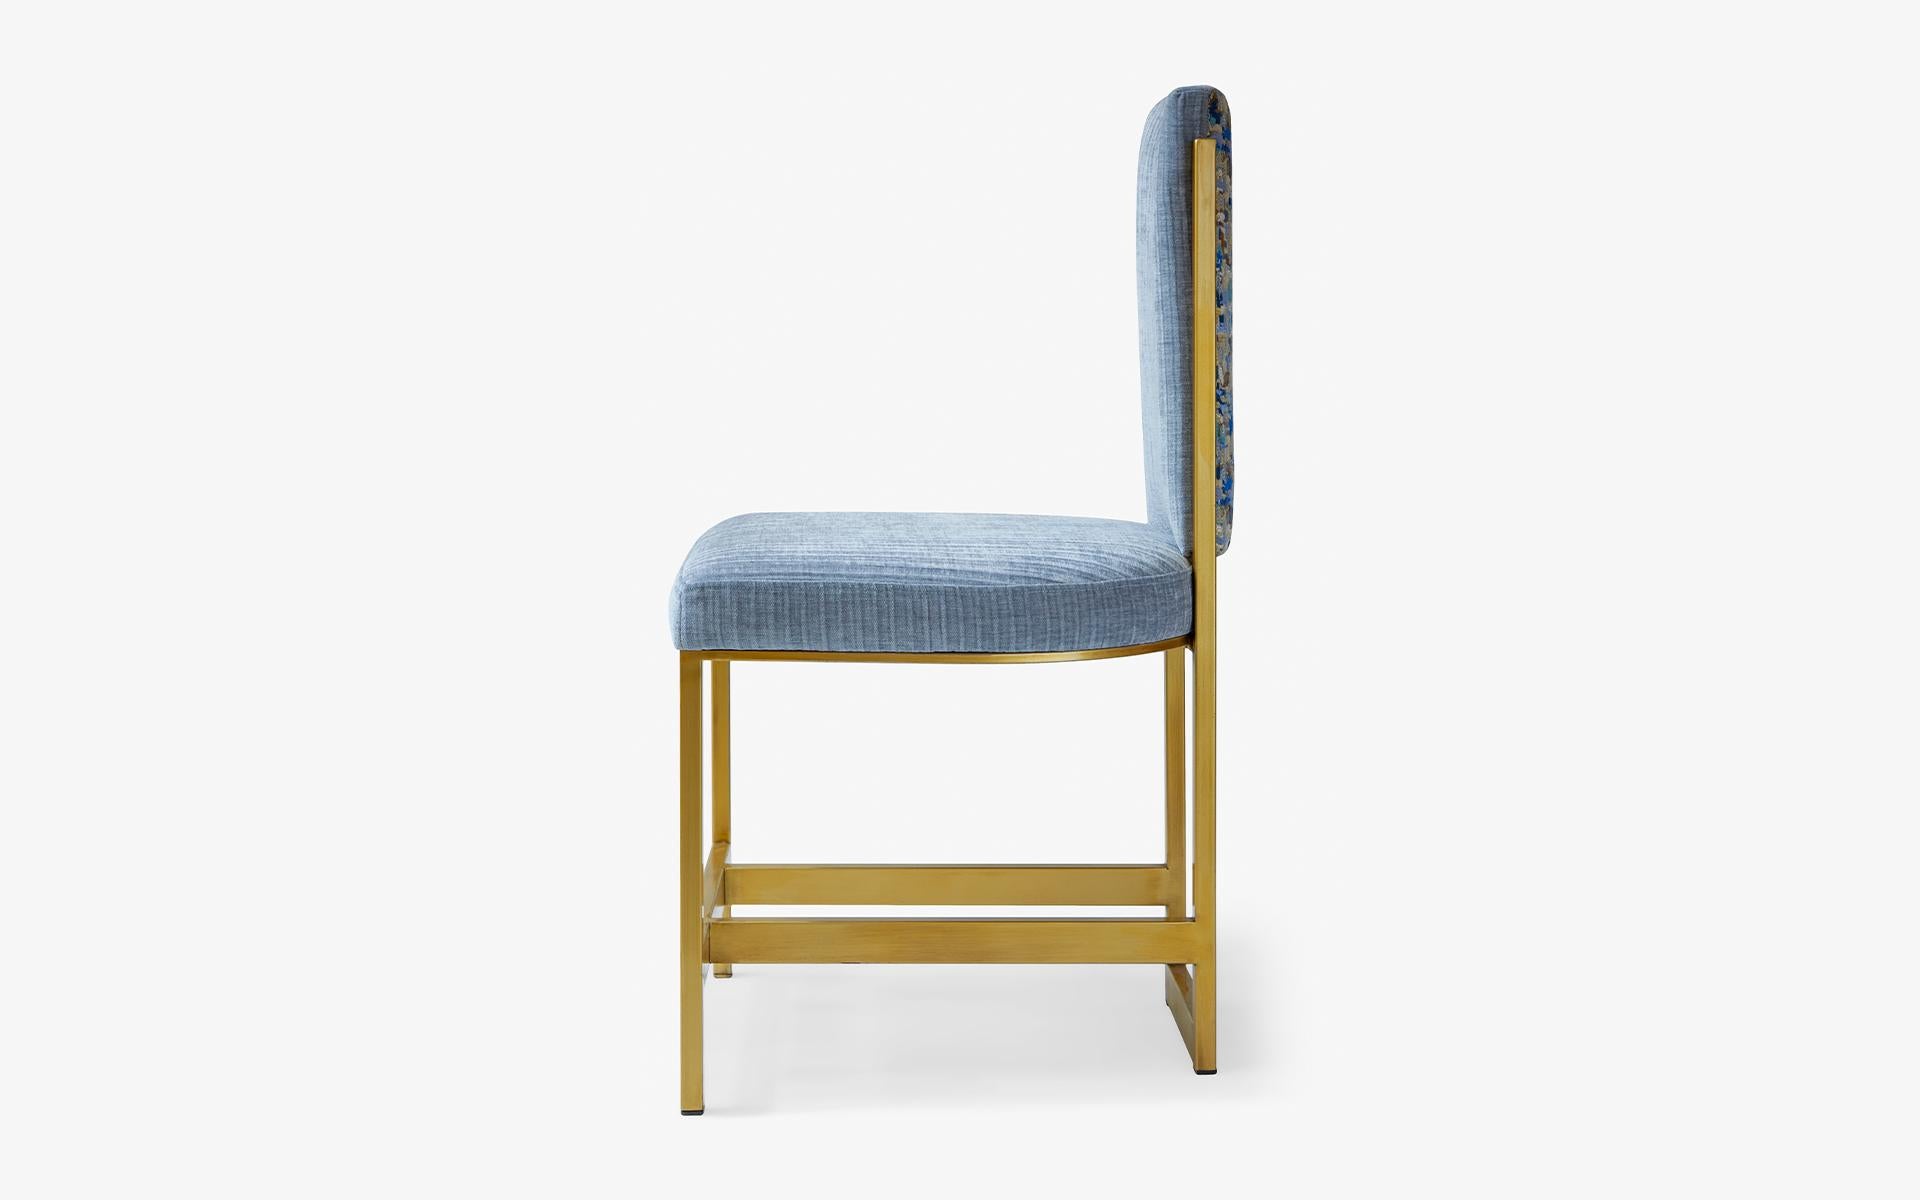 La chaise rappelée Kenzo blue fait ressortir votre résonance pour l'antiquité grâce à sa finesse d'exécution et à sa forme esthétique alliée à un confort pratique.

Conçu pour maximiser à la fois la forme et le confort, le canapé trois places